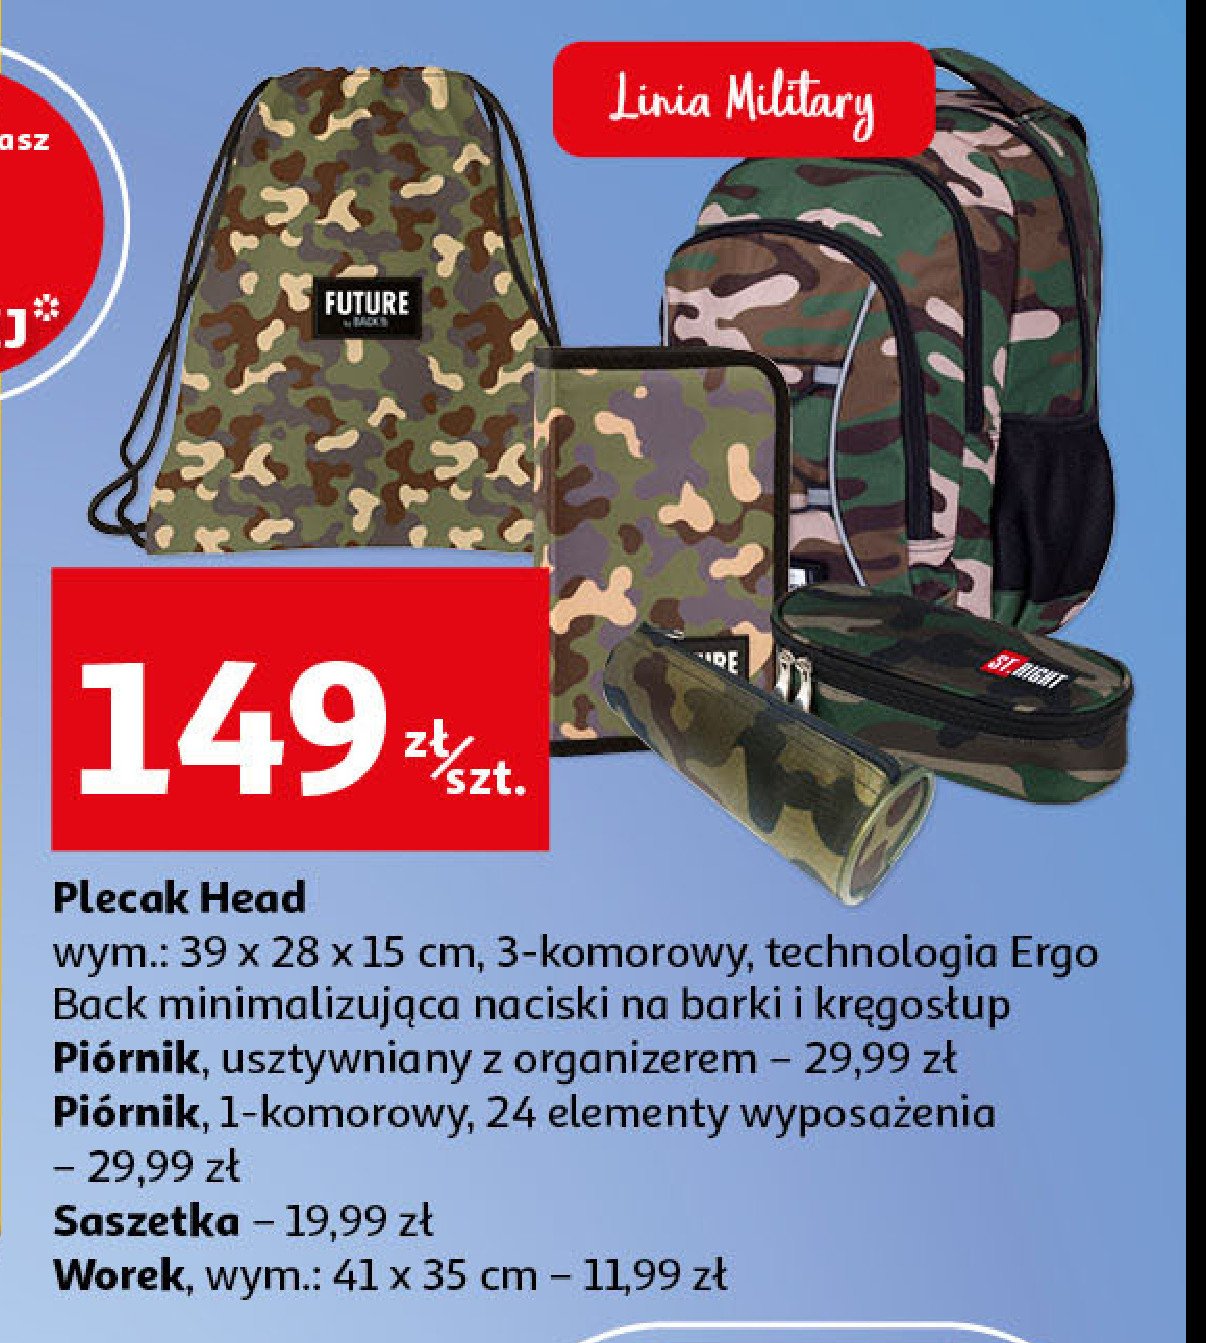 Plecak 3-komorowy 39 x 28 x 15 cm military Astra head promocja